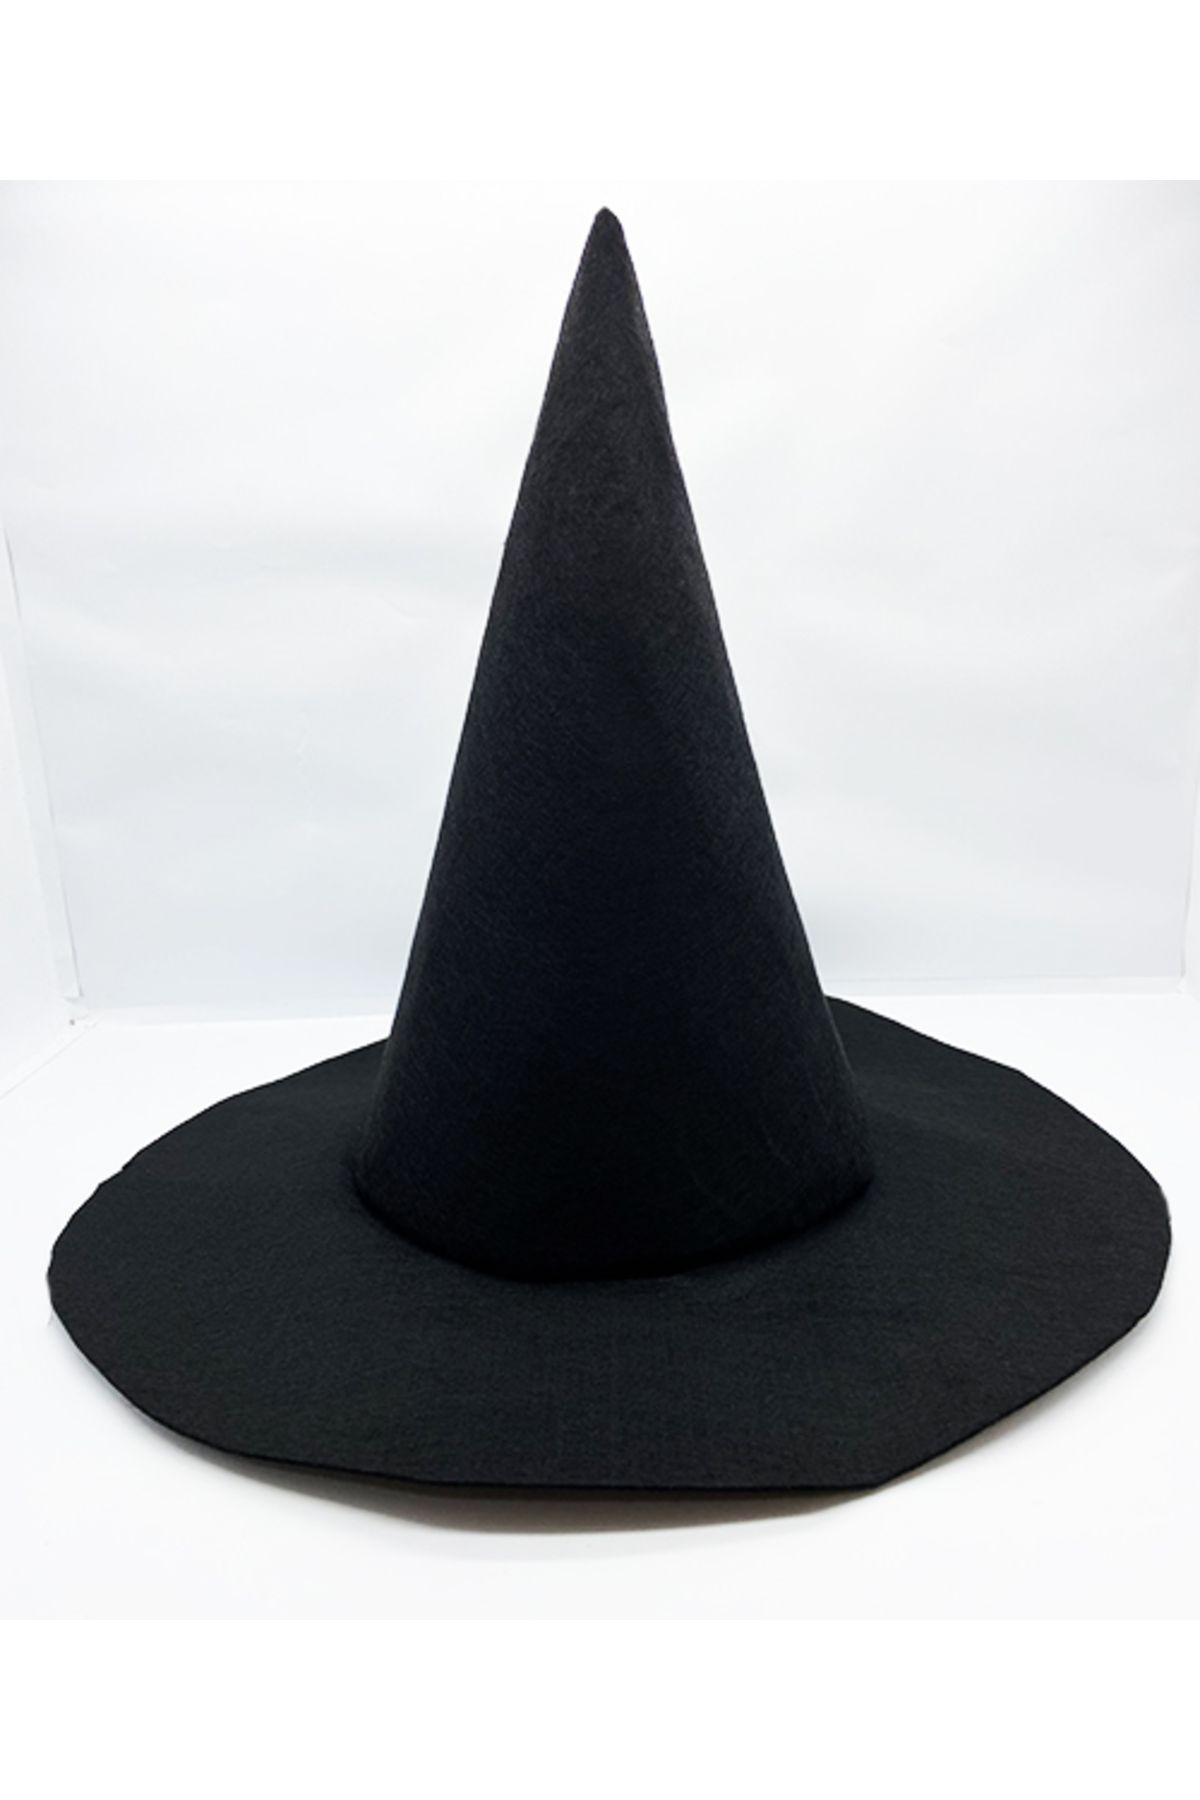 ShopZum Siyah Renk Keçe Cadı Şapkası 35x38 cm